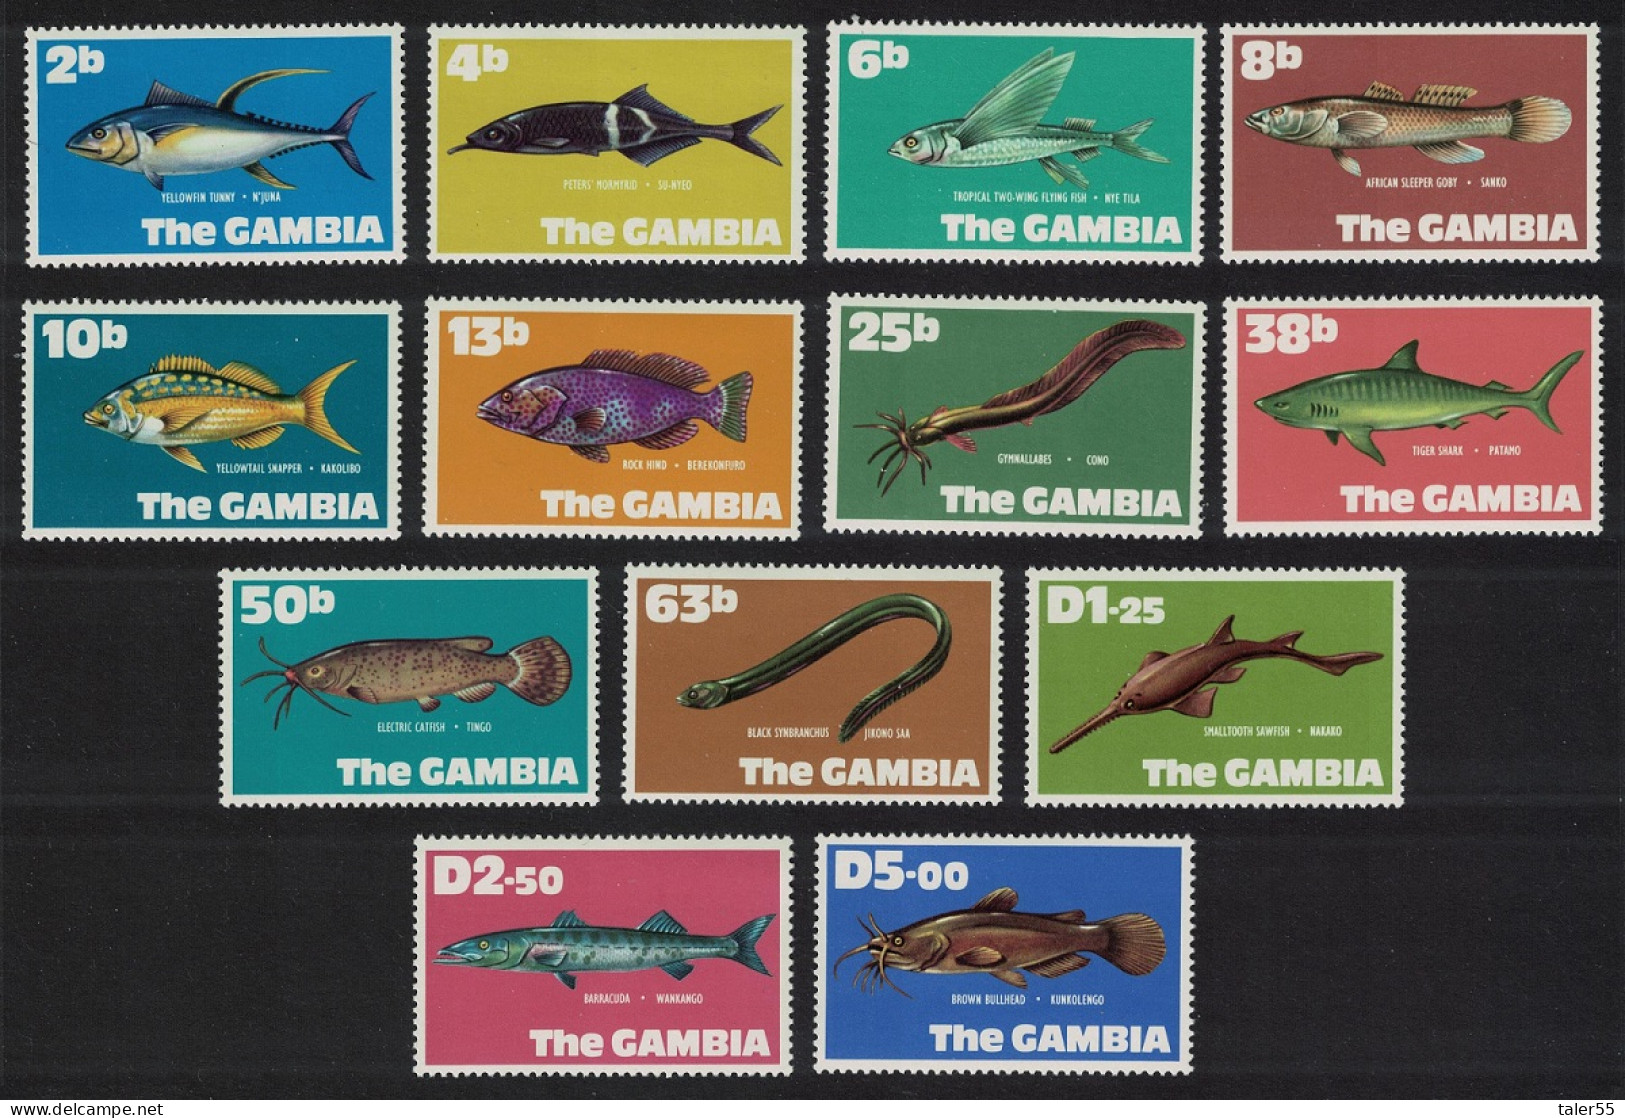 Gambia Fish 13v 1971 MNH SG#271-283 - Gambia (1965-...)